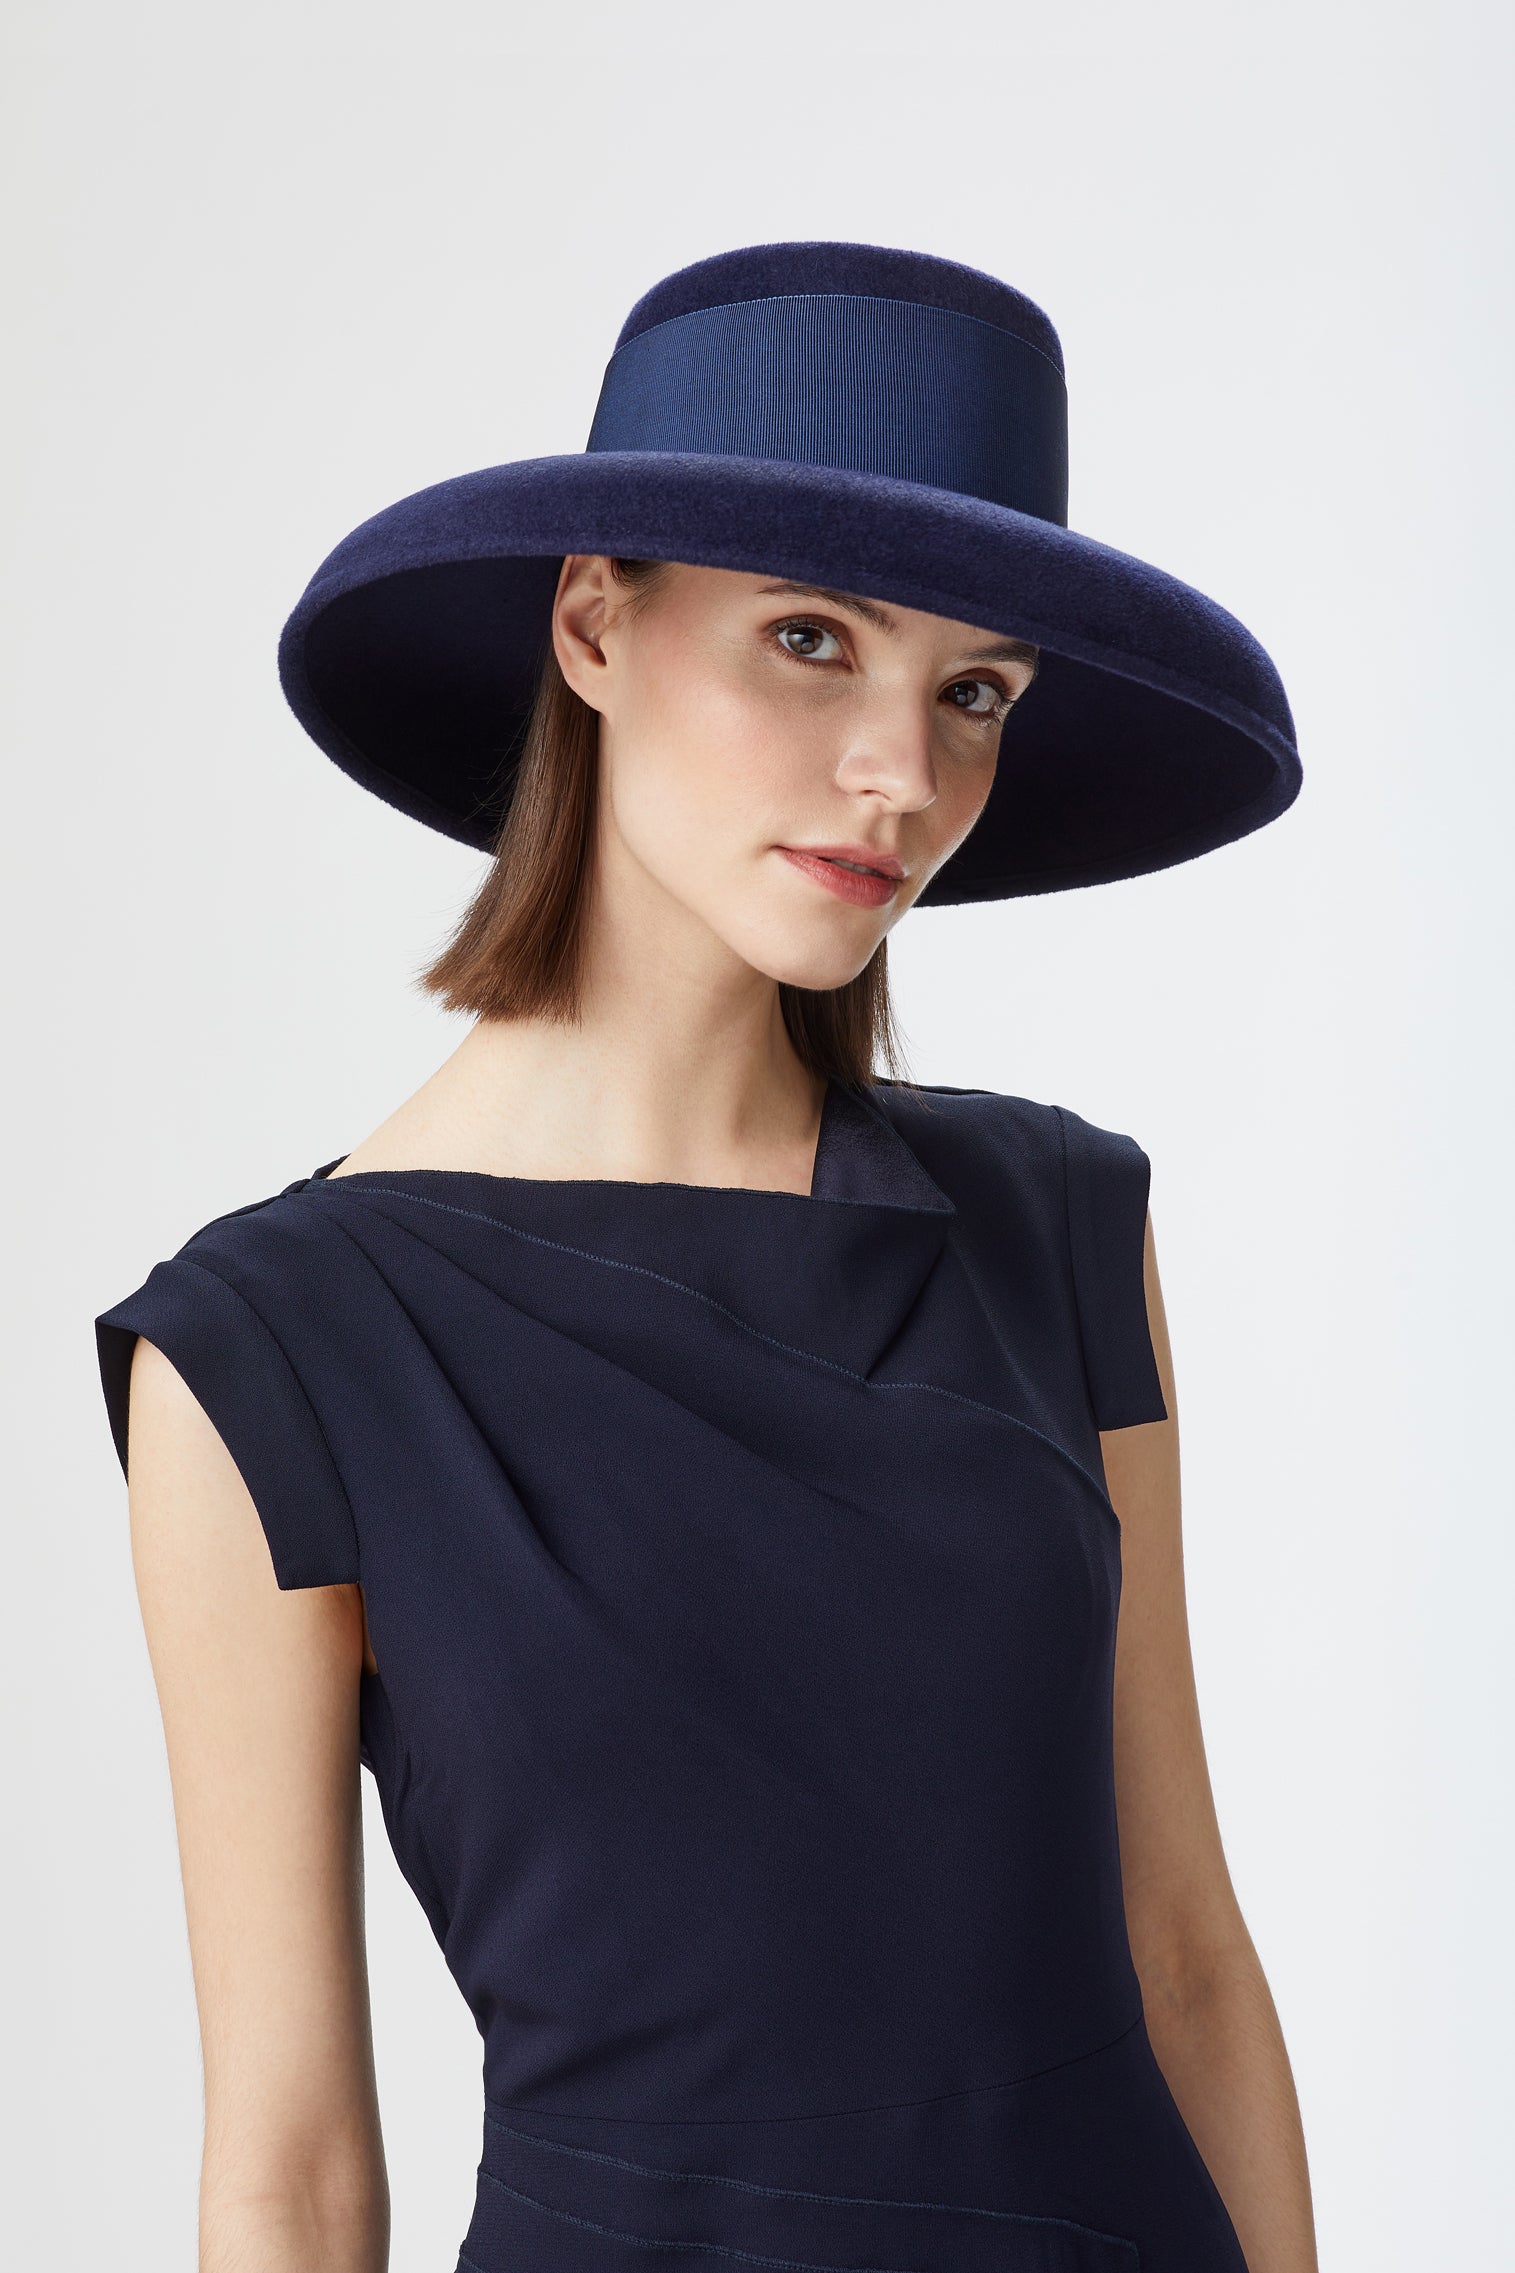 Tiffany Drop-Brim Hat - Kentucky Derby Hats for Women - Lock & Co. Hatters London UK